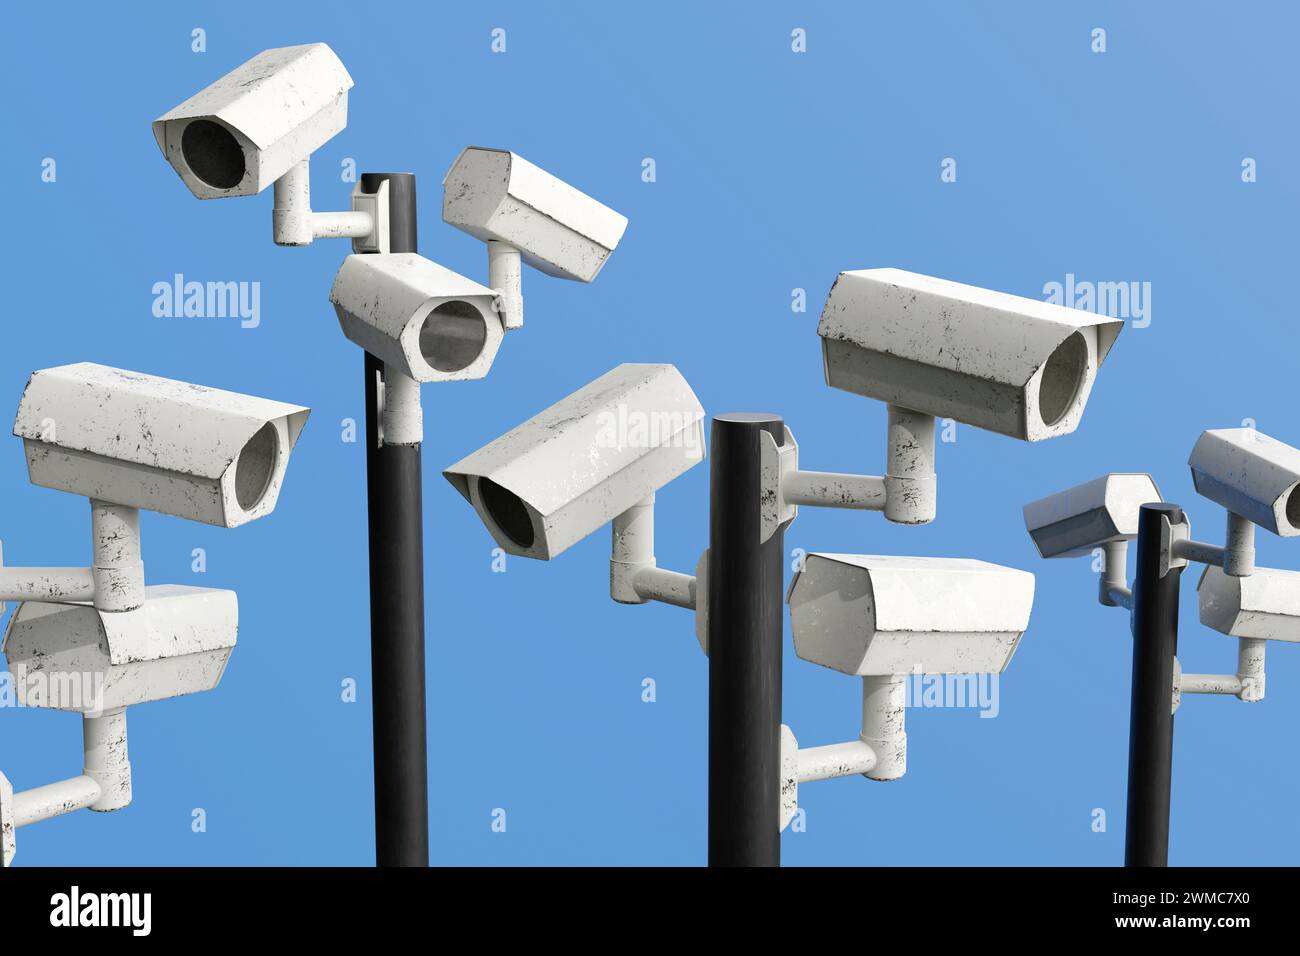 Sorveglianza CCTV ovunque per monitorare le attività individuali e contrastare il terrorismo. Illustrazione del concetto di sorveglianza di massa Foto Stock